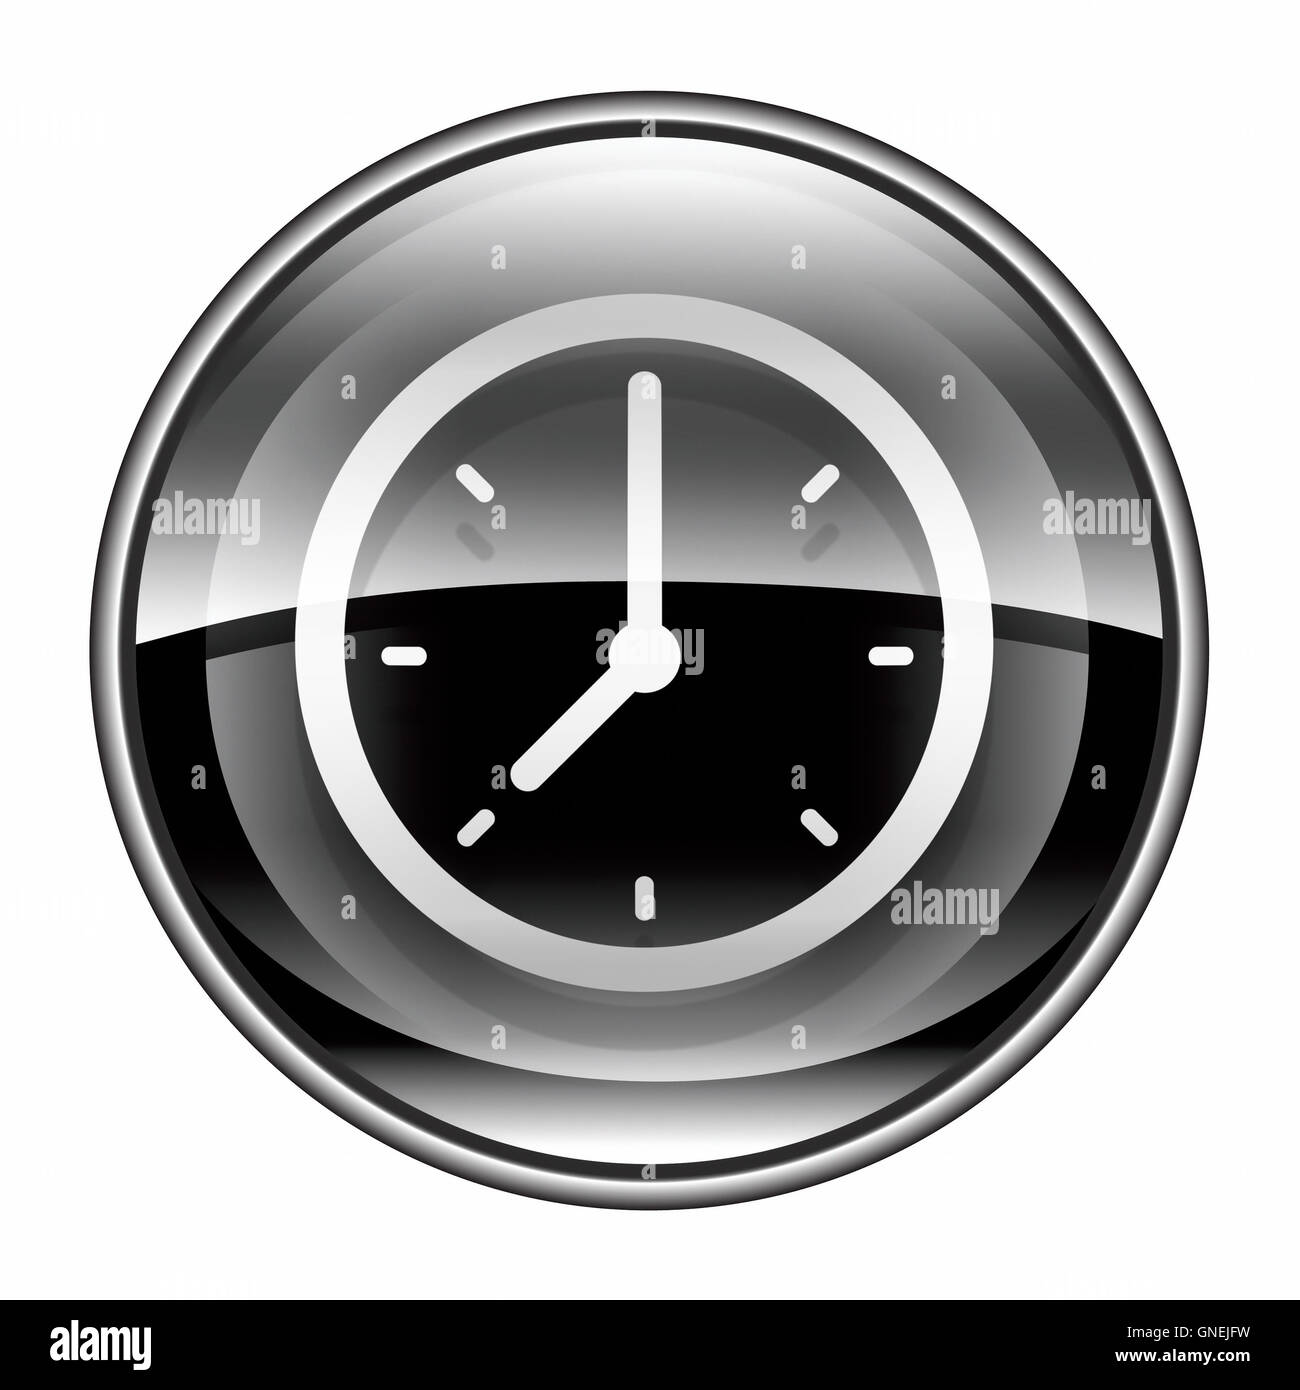 clock icon black, isolated on white background. Stock Photo